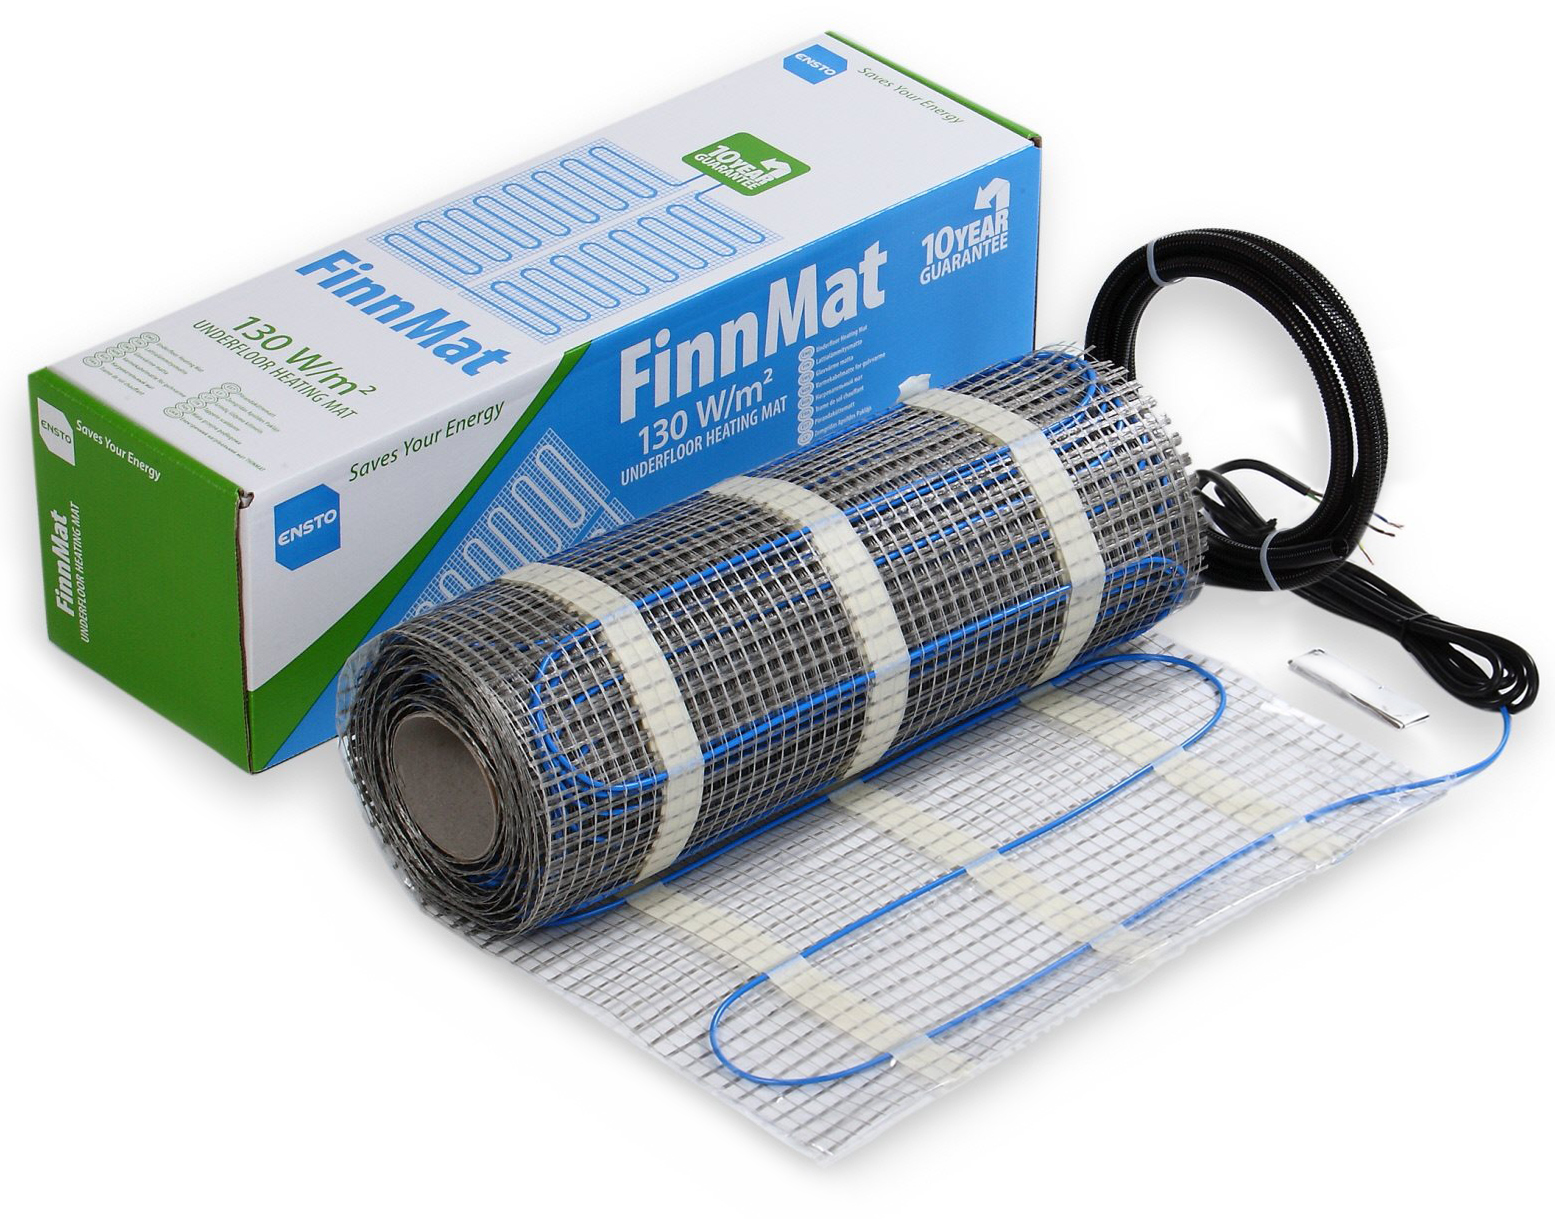 Ensto FinnMat EFHFM130.4